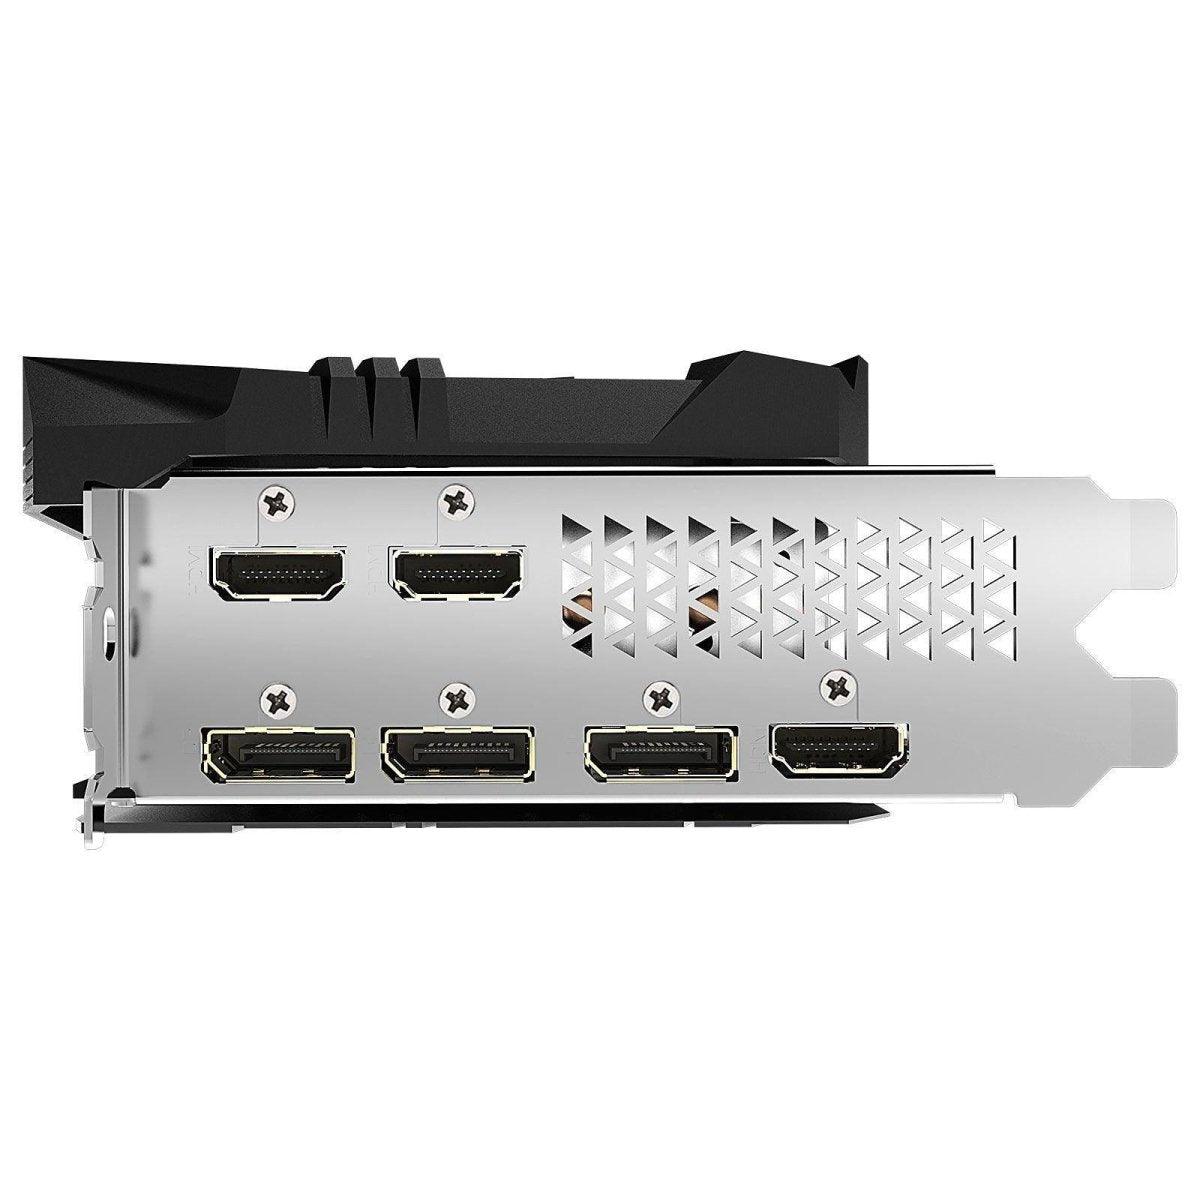 Gigabyte AORUS Radeon RX 5700 XT 8G - GDDR6 - Tri HDMI/Tri DisplayPort - PCI Express (AMD Radeon RX 5700 XT) - Smartmarket.ma